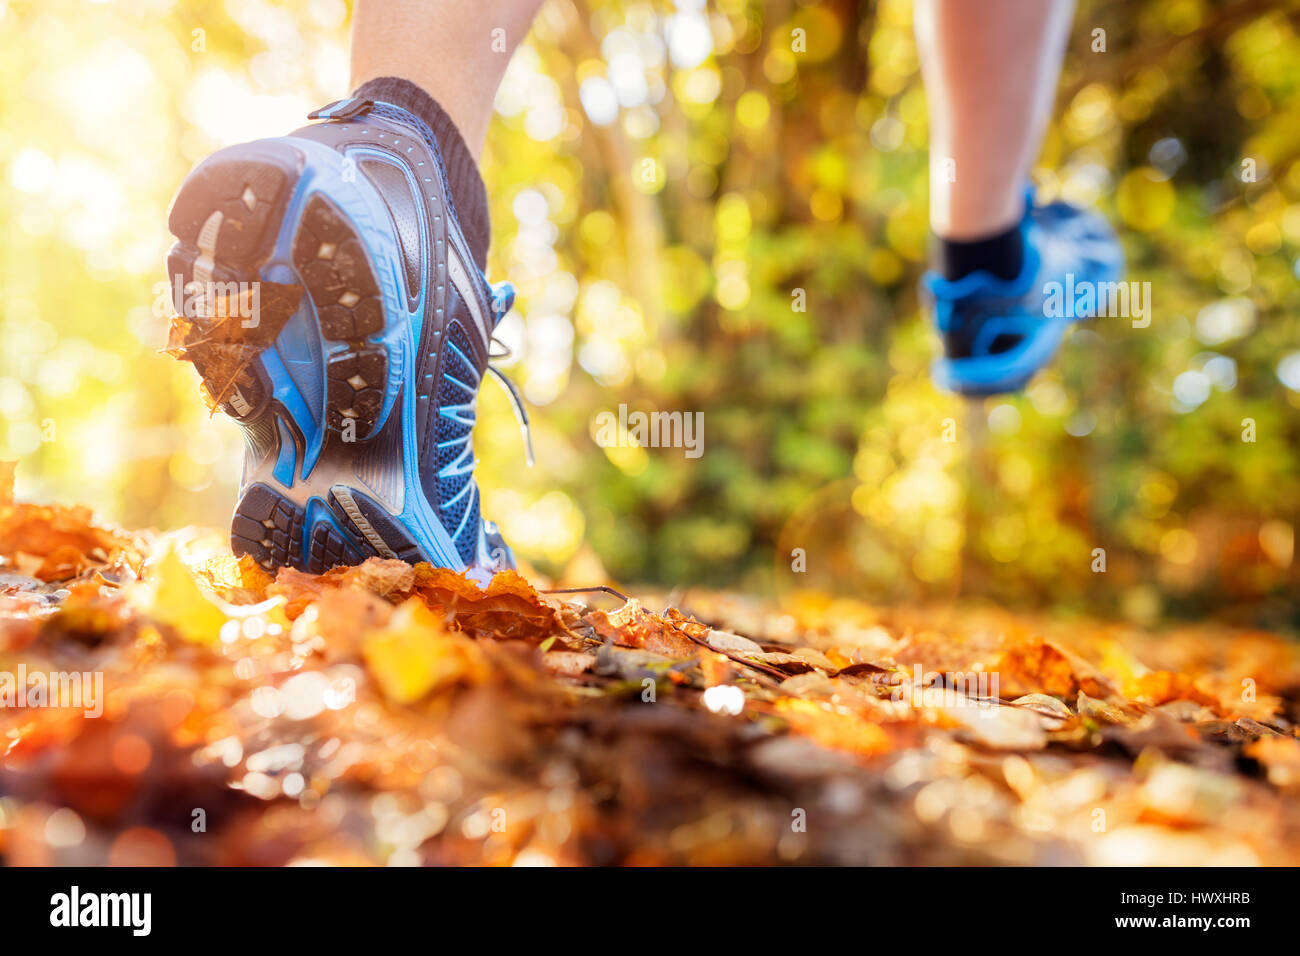 Outdoor-Langlauf im Sommer Herbst Sonnenschein Konzept für Sport, Fitness und gesunde Lebensweise Stockfoto